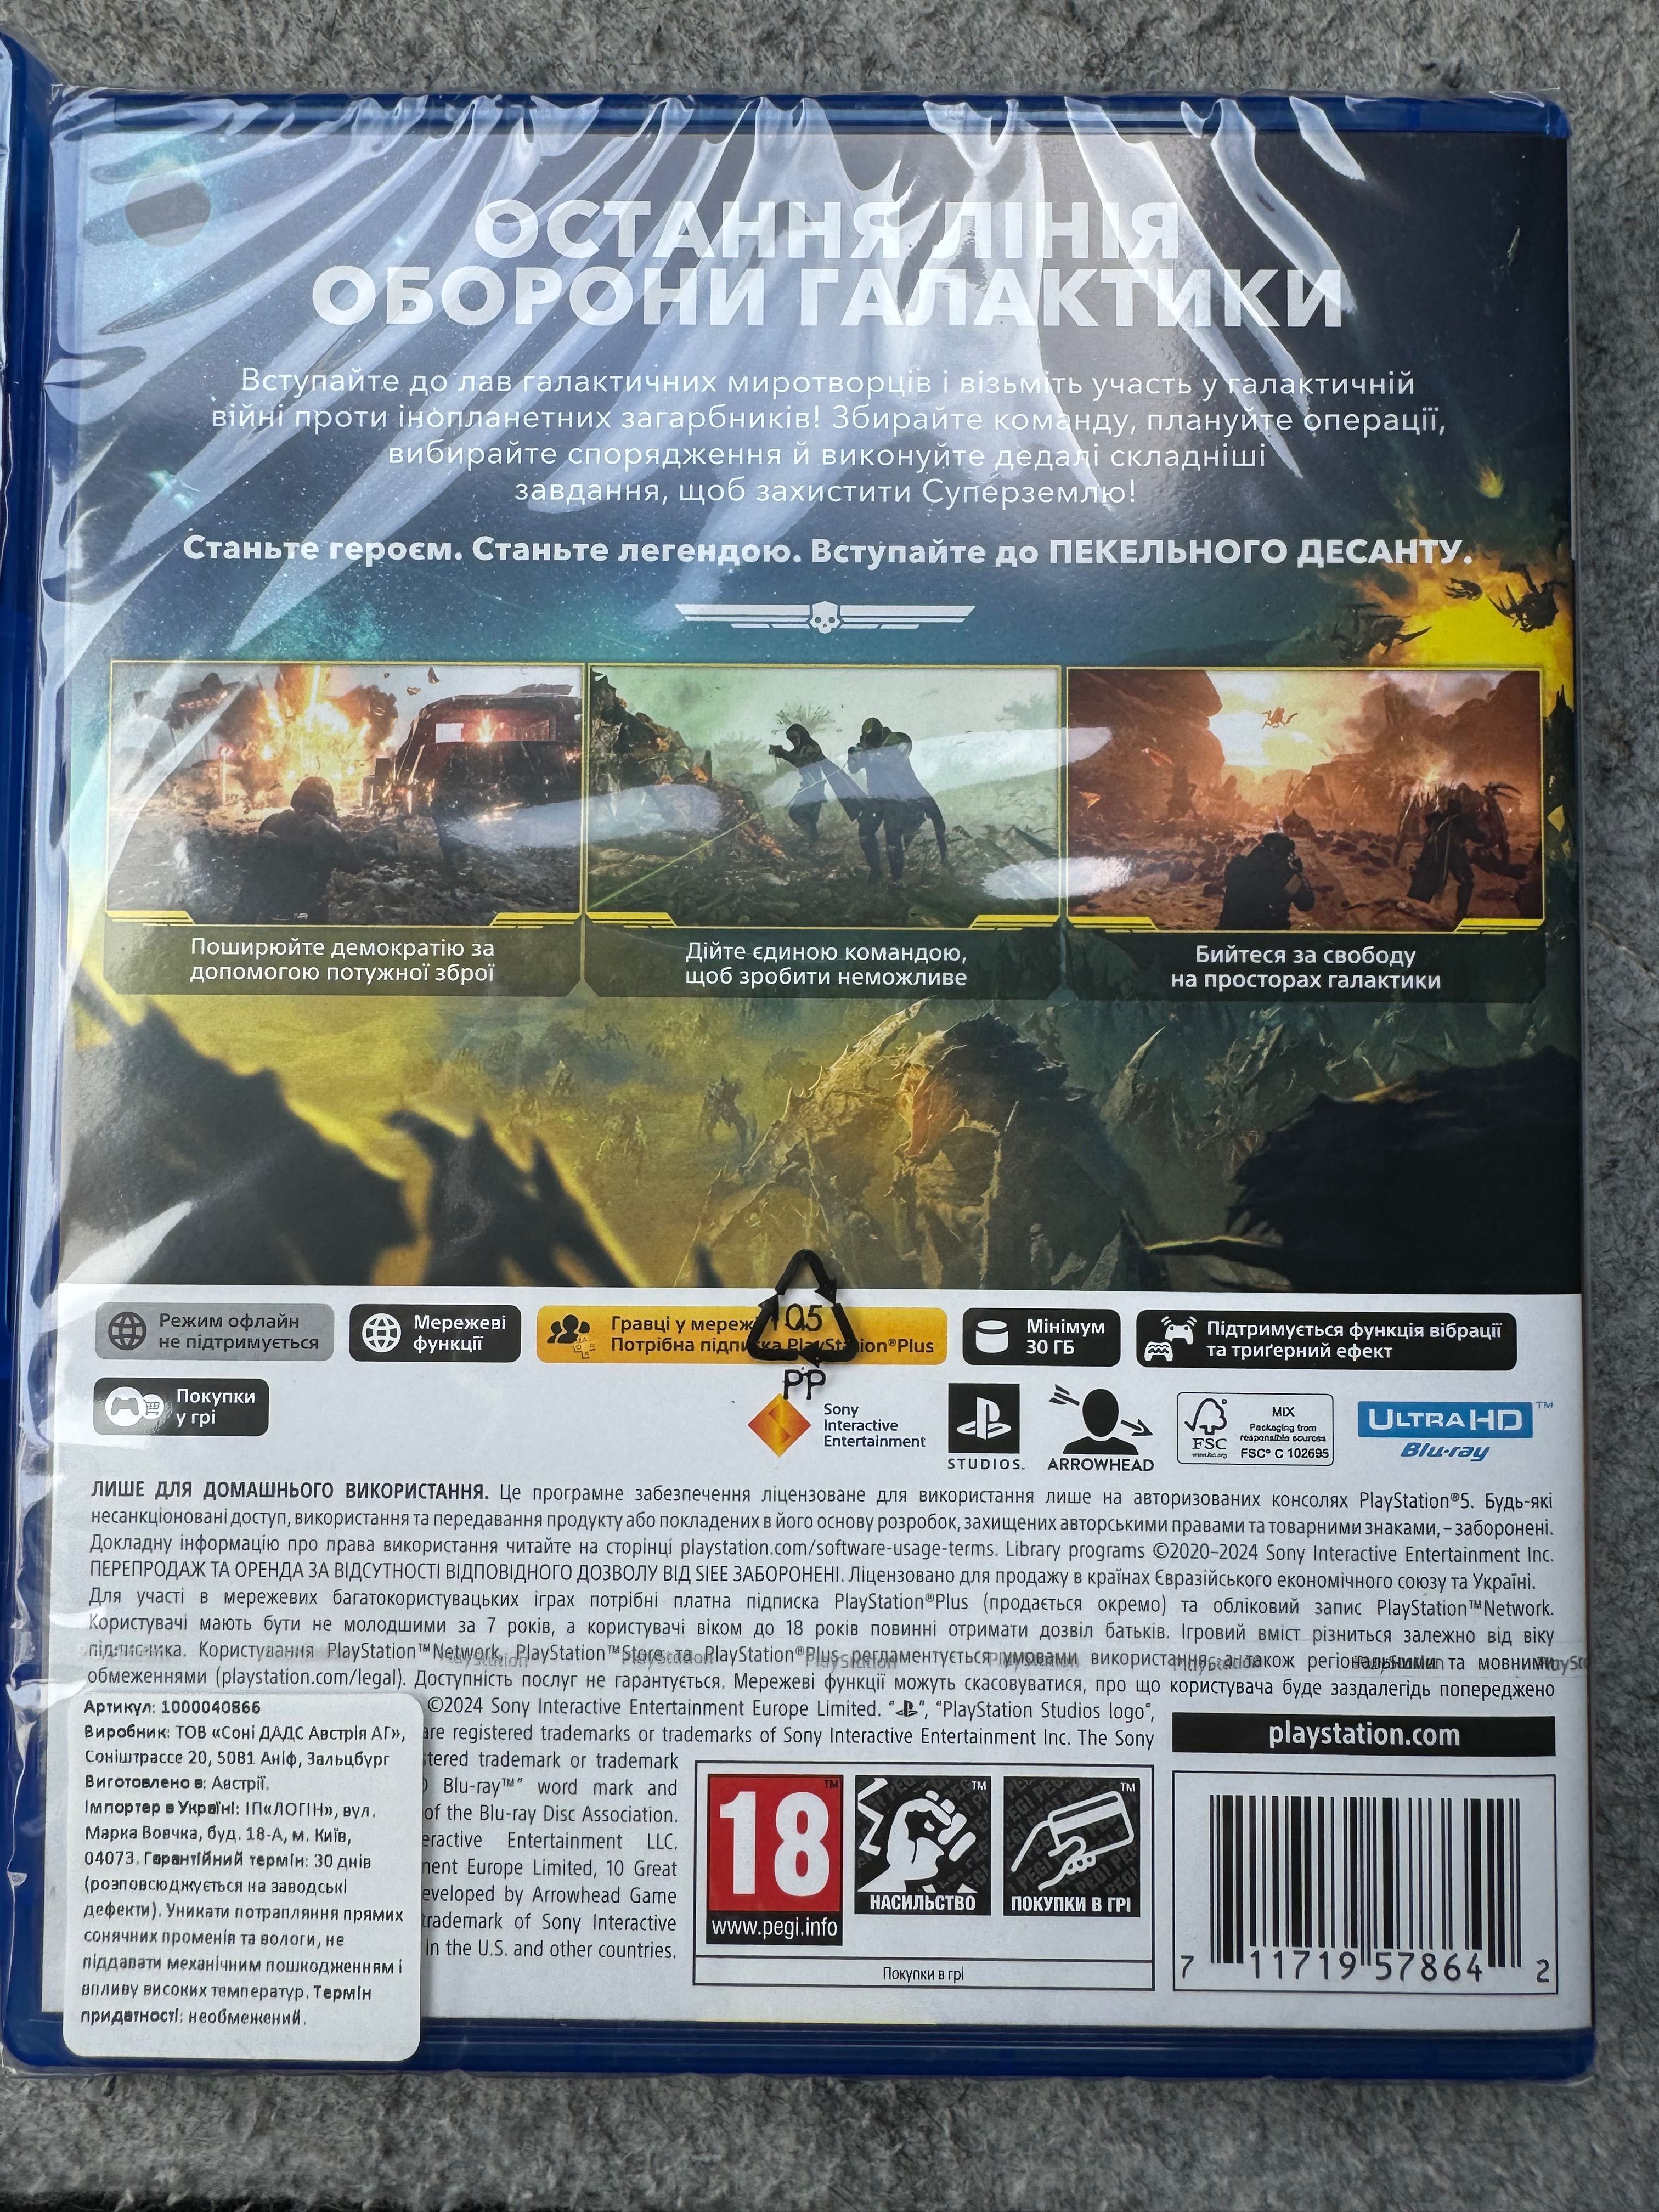 Офіційні диски Helldivers 2 PS5 (російські субтитри)